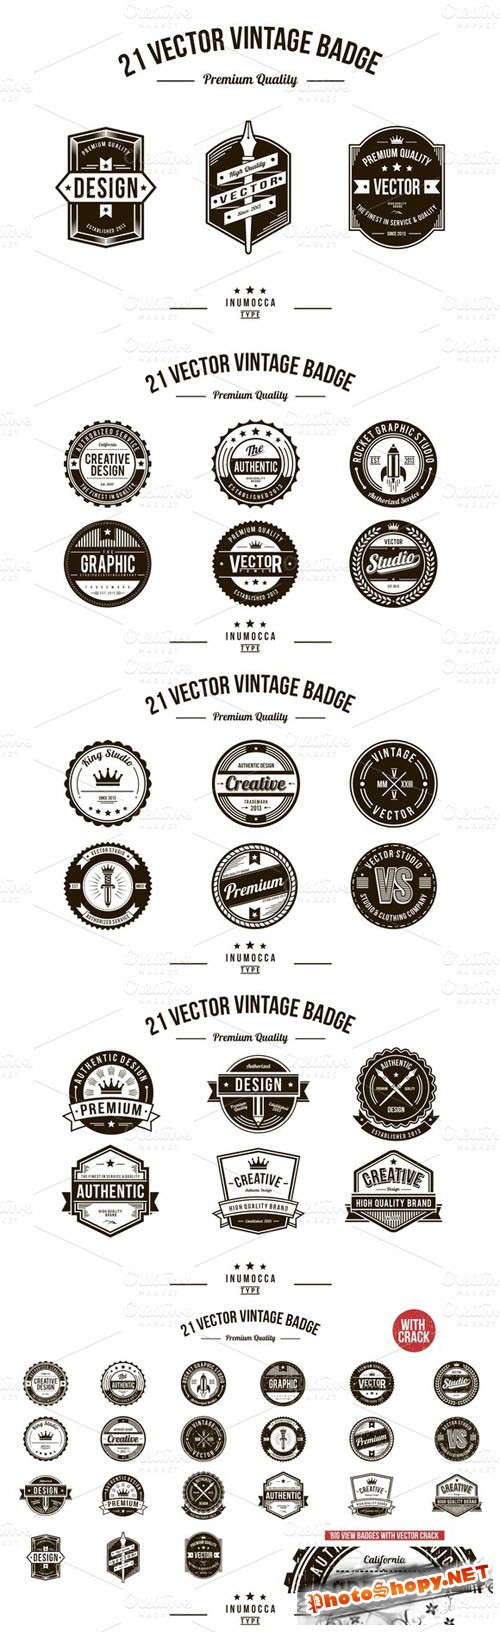 21 Vintage Badges (CLEAR & CRACK) - Creativemarket 13142